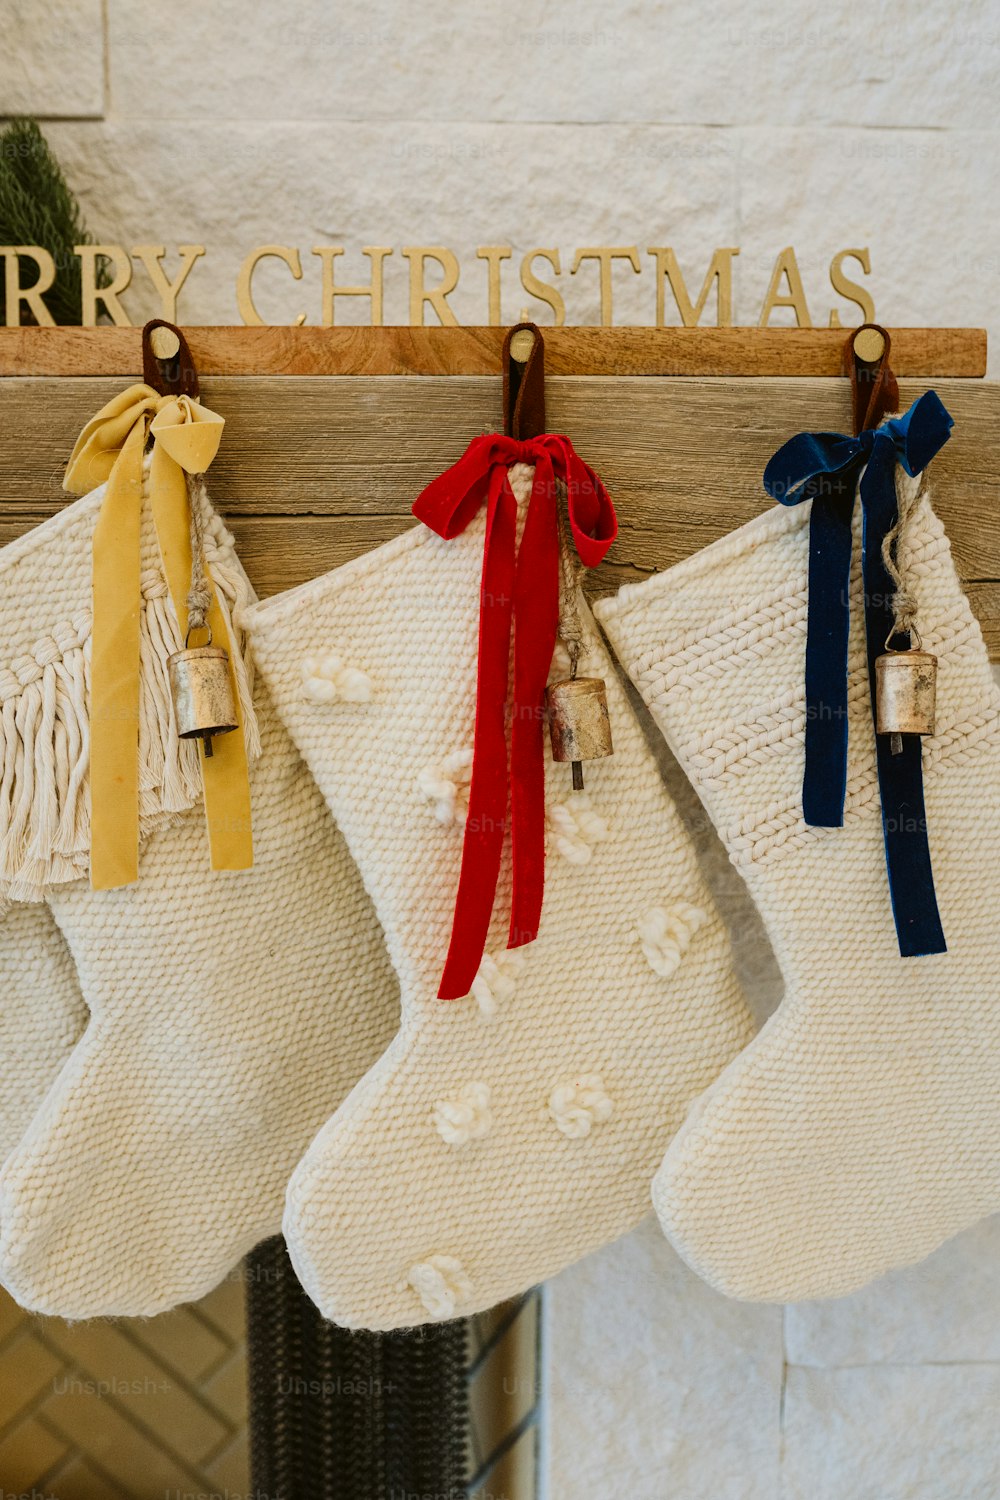 Três meias penduradas em uma lareira com uma placa de Feliz Natal acima delas